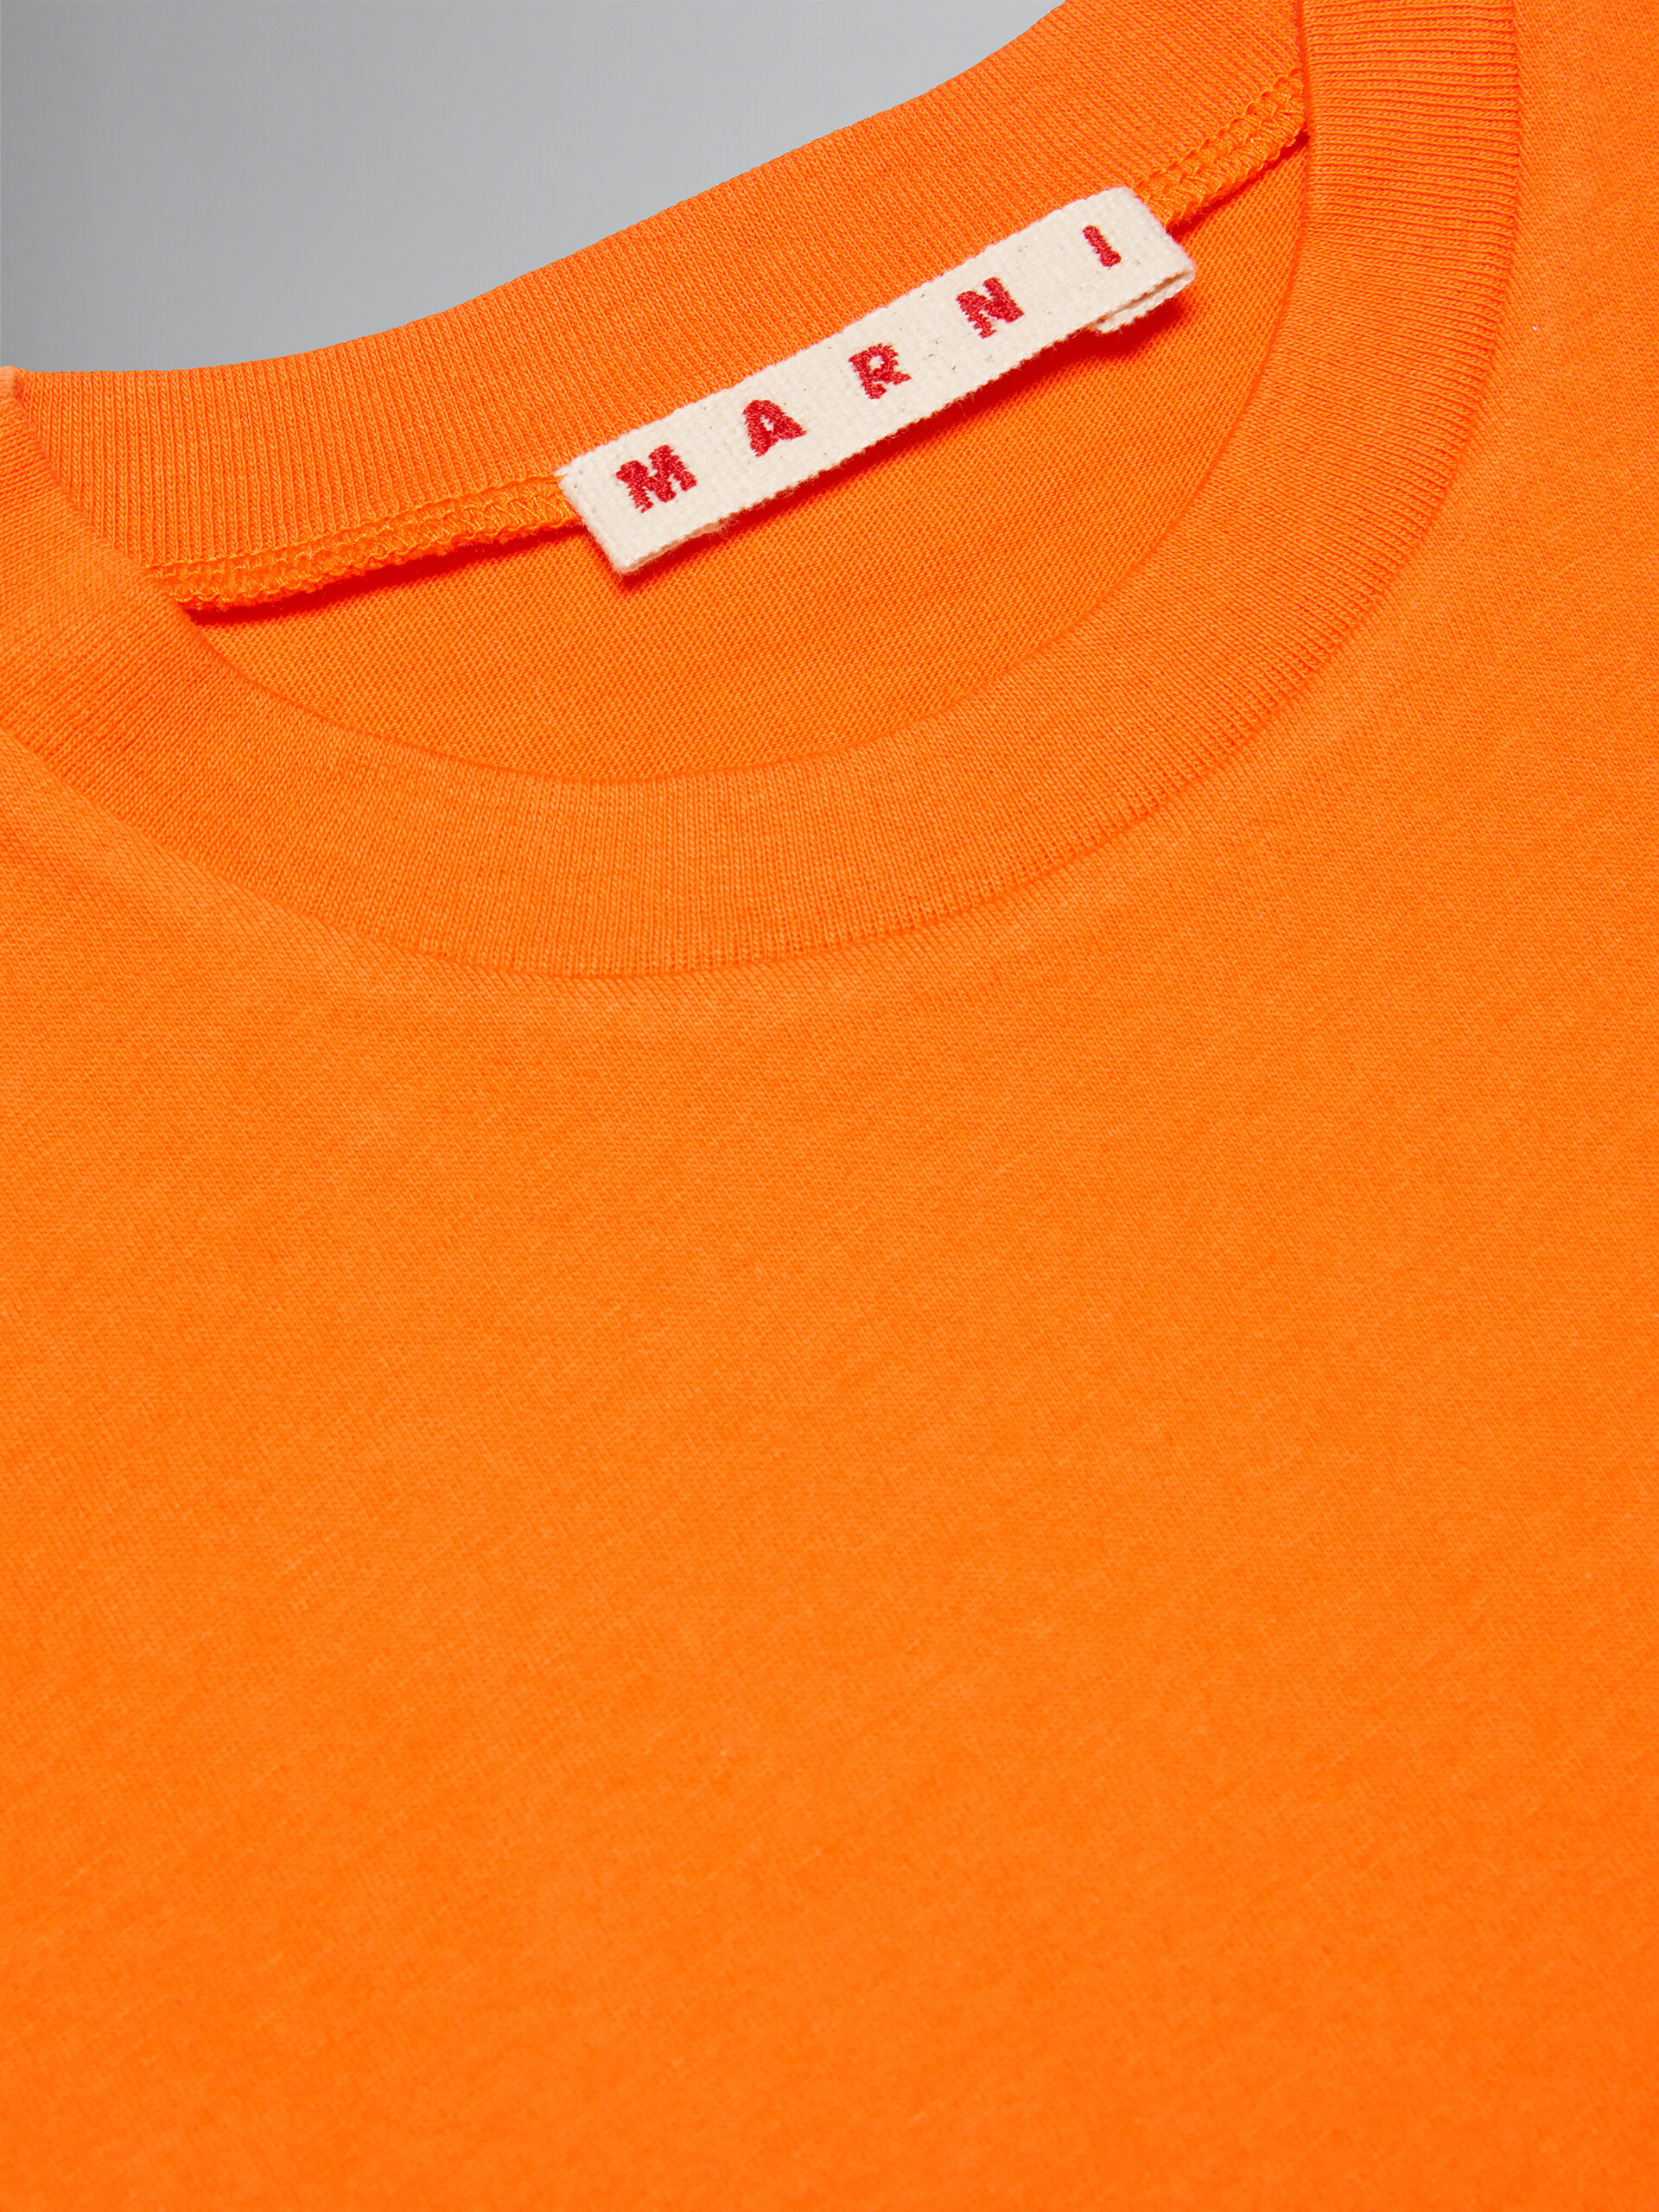 T-shirt court orange avec logo - T-shirts - Image 3